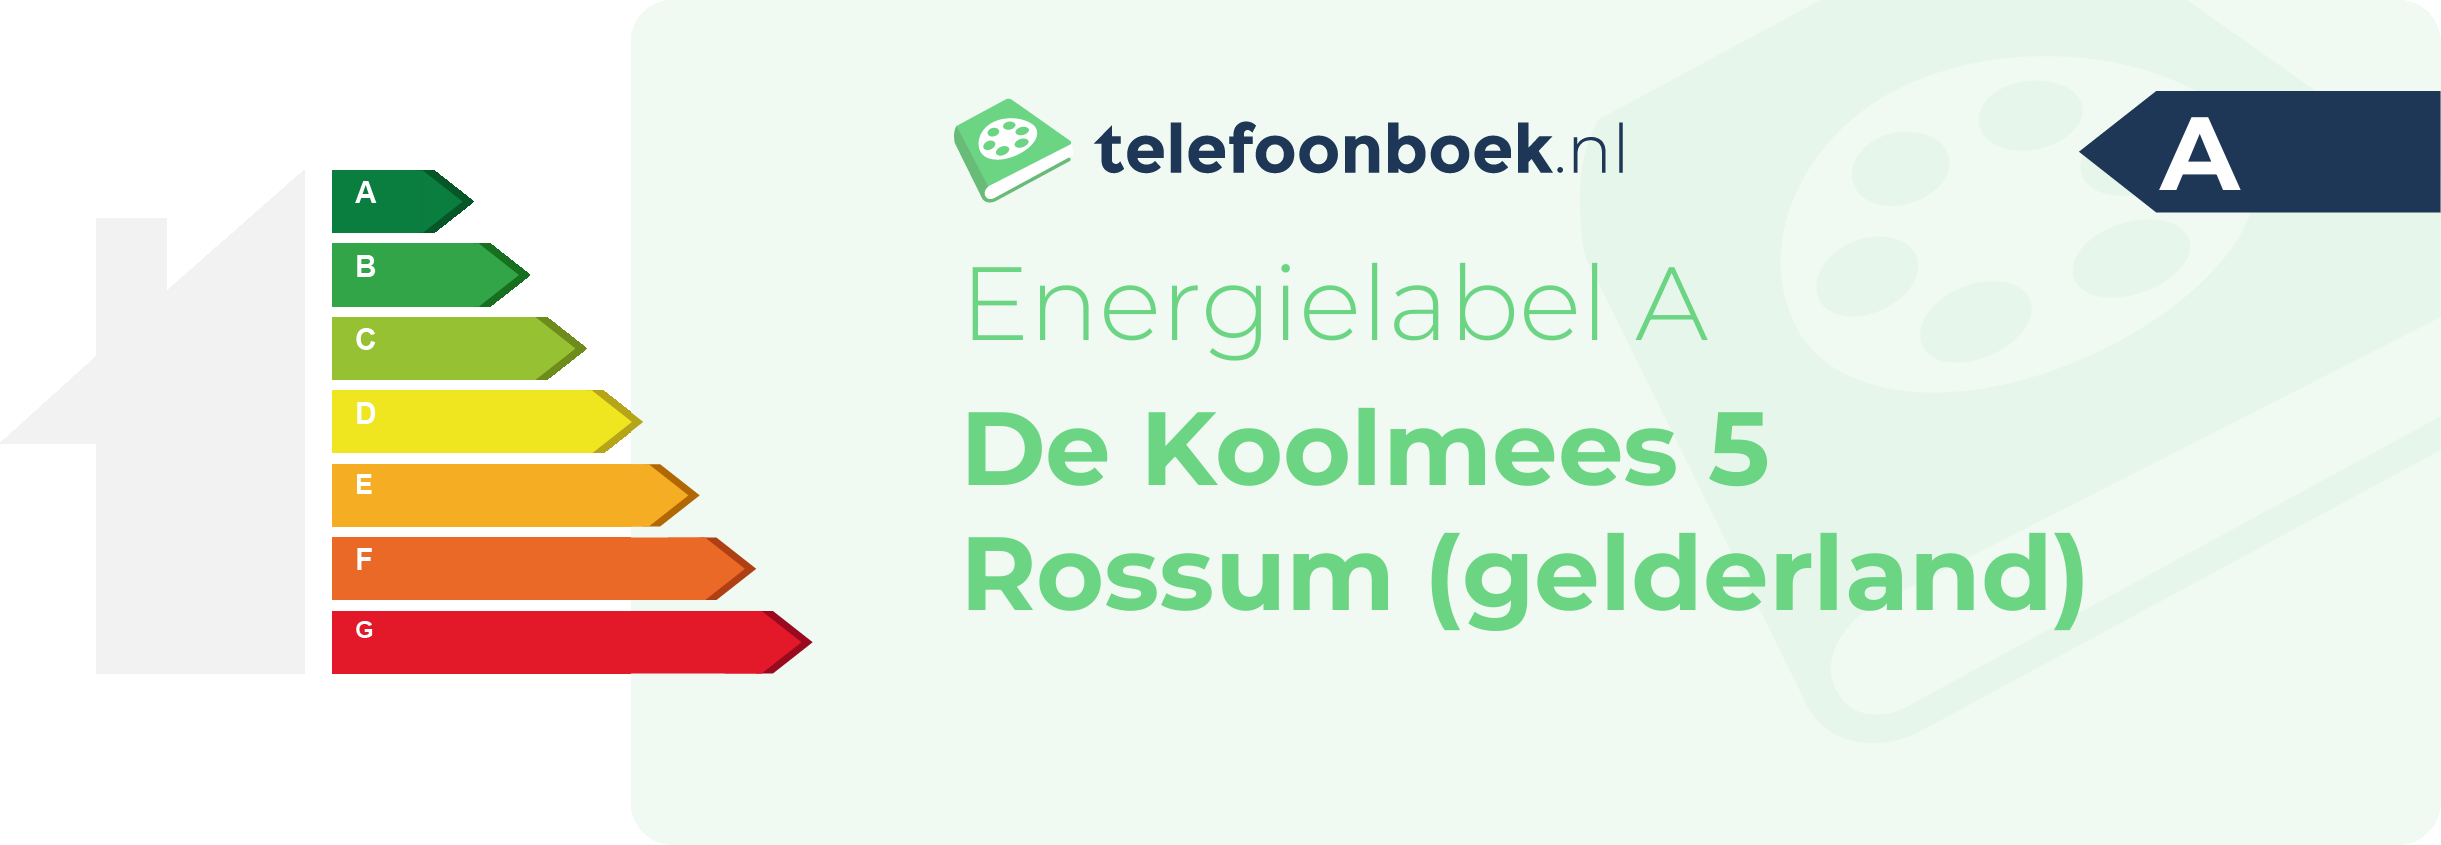 Energielabel De Koolmees 5 Rossum (Gelderland)